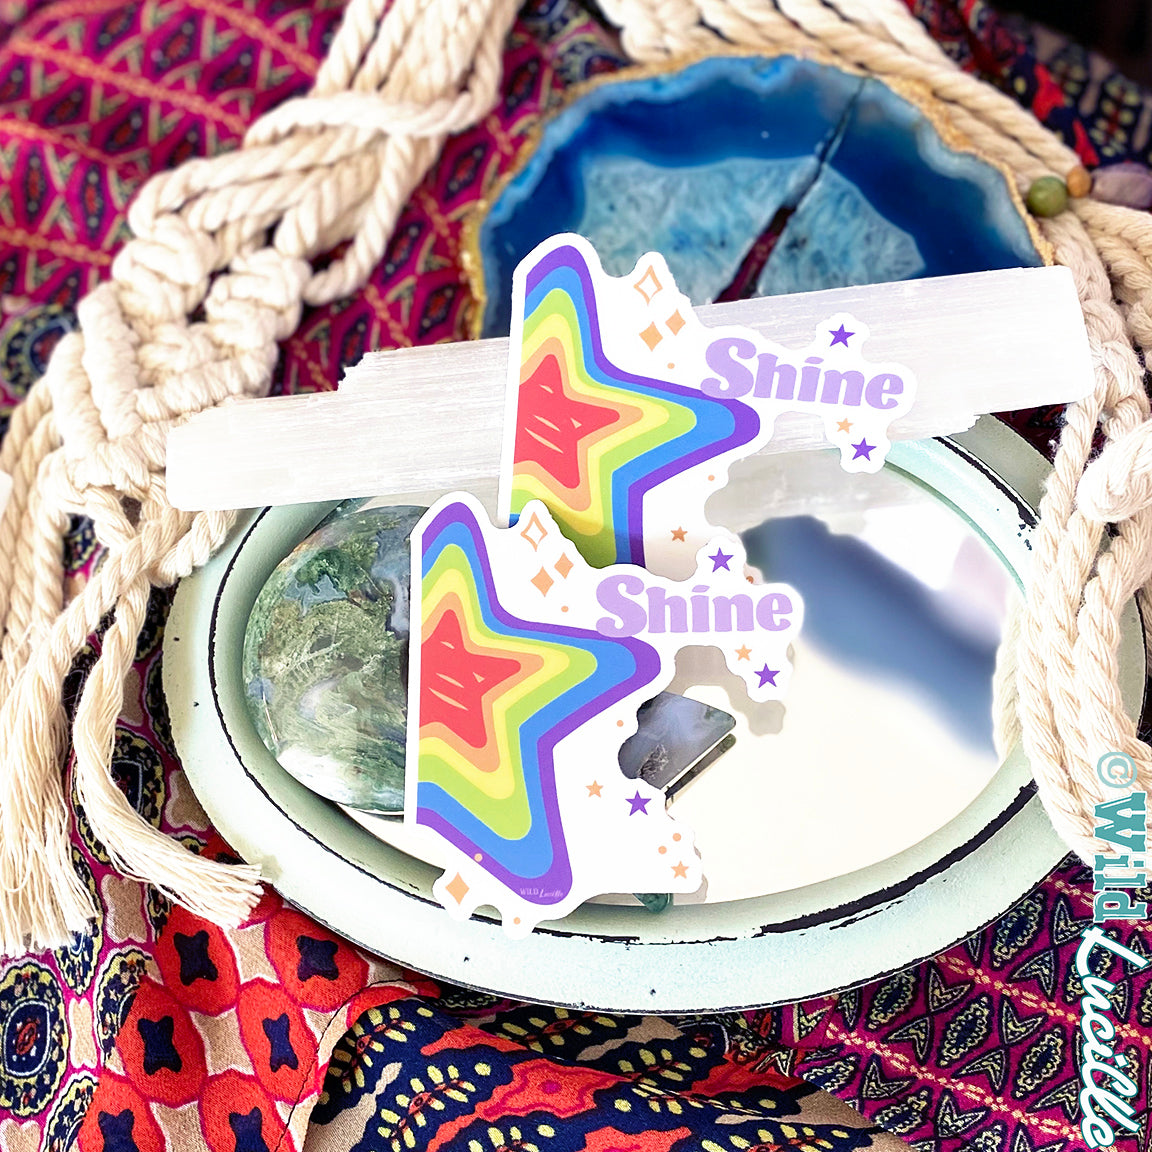 Shine Rainbow Star - Inspirational Vinyl Sticker Decals